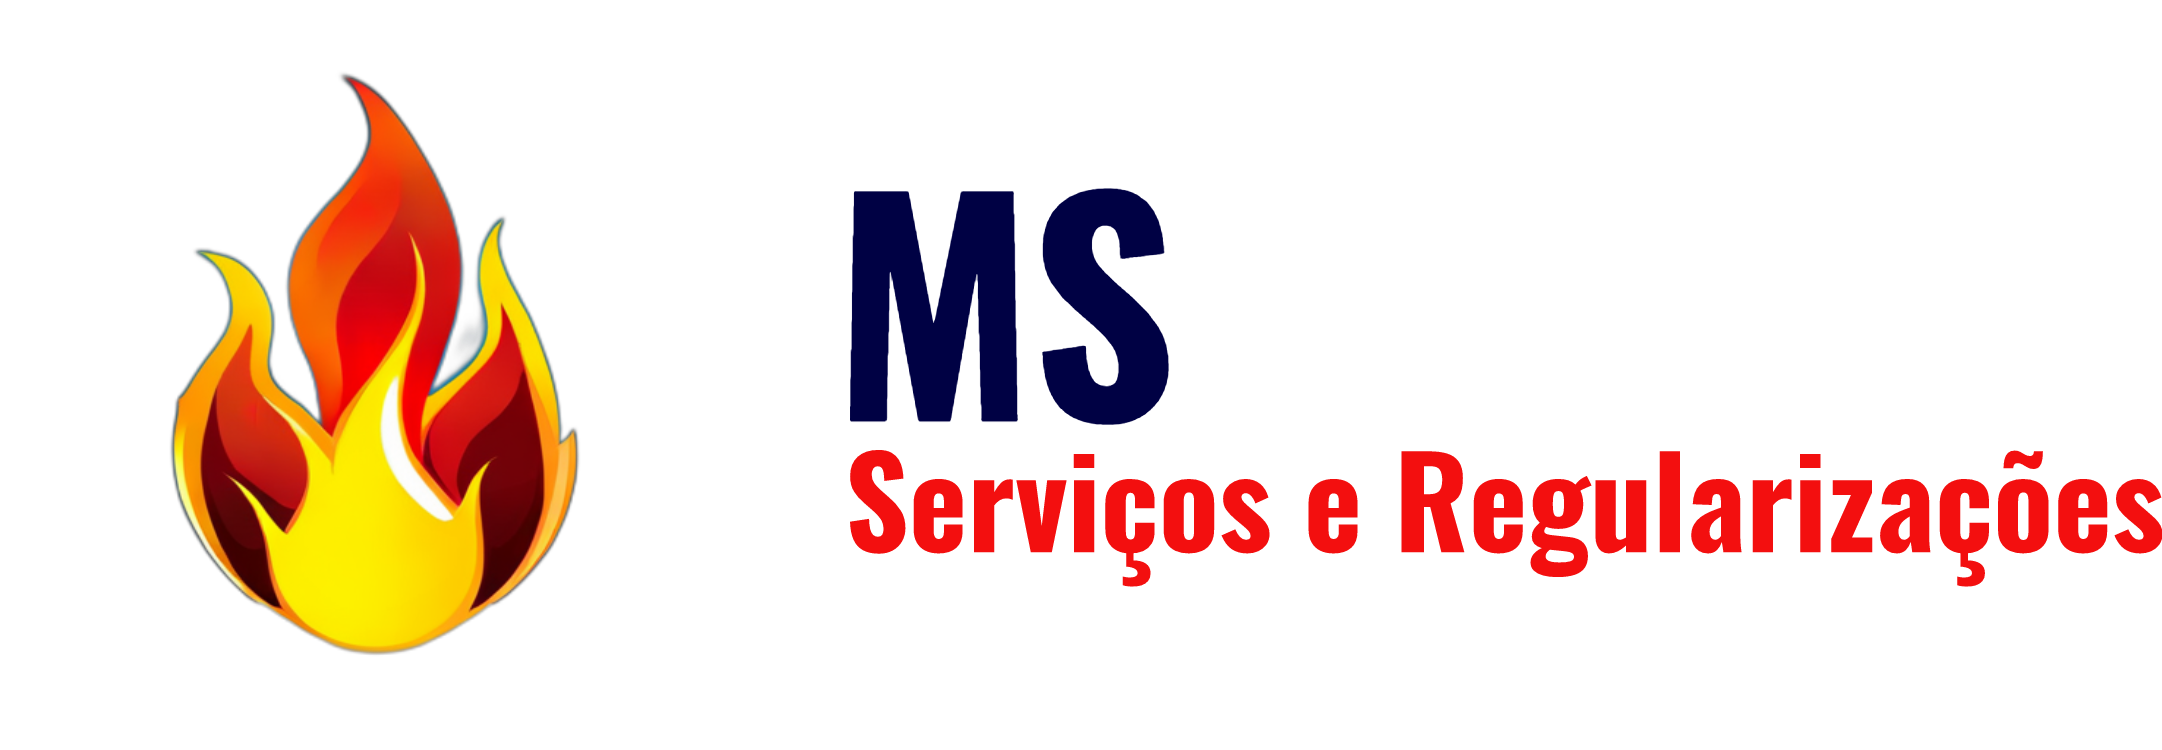 MS Serviços e Regularizações